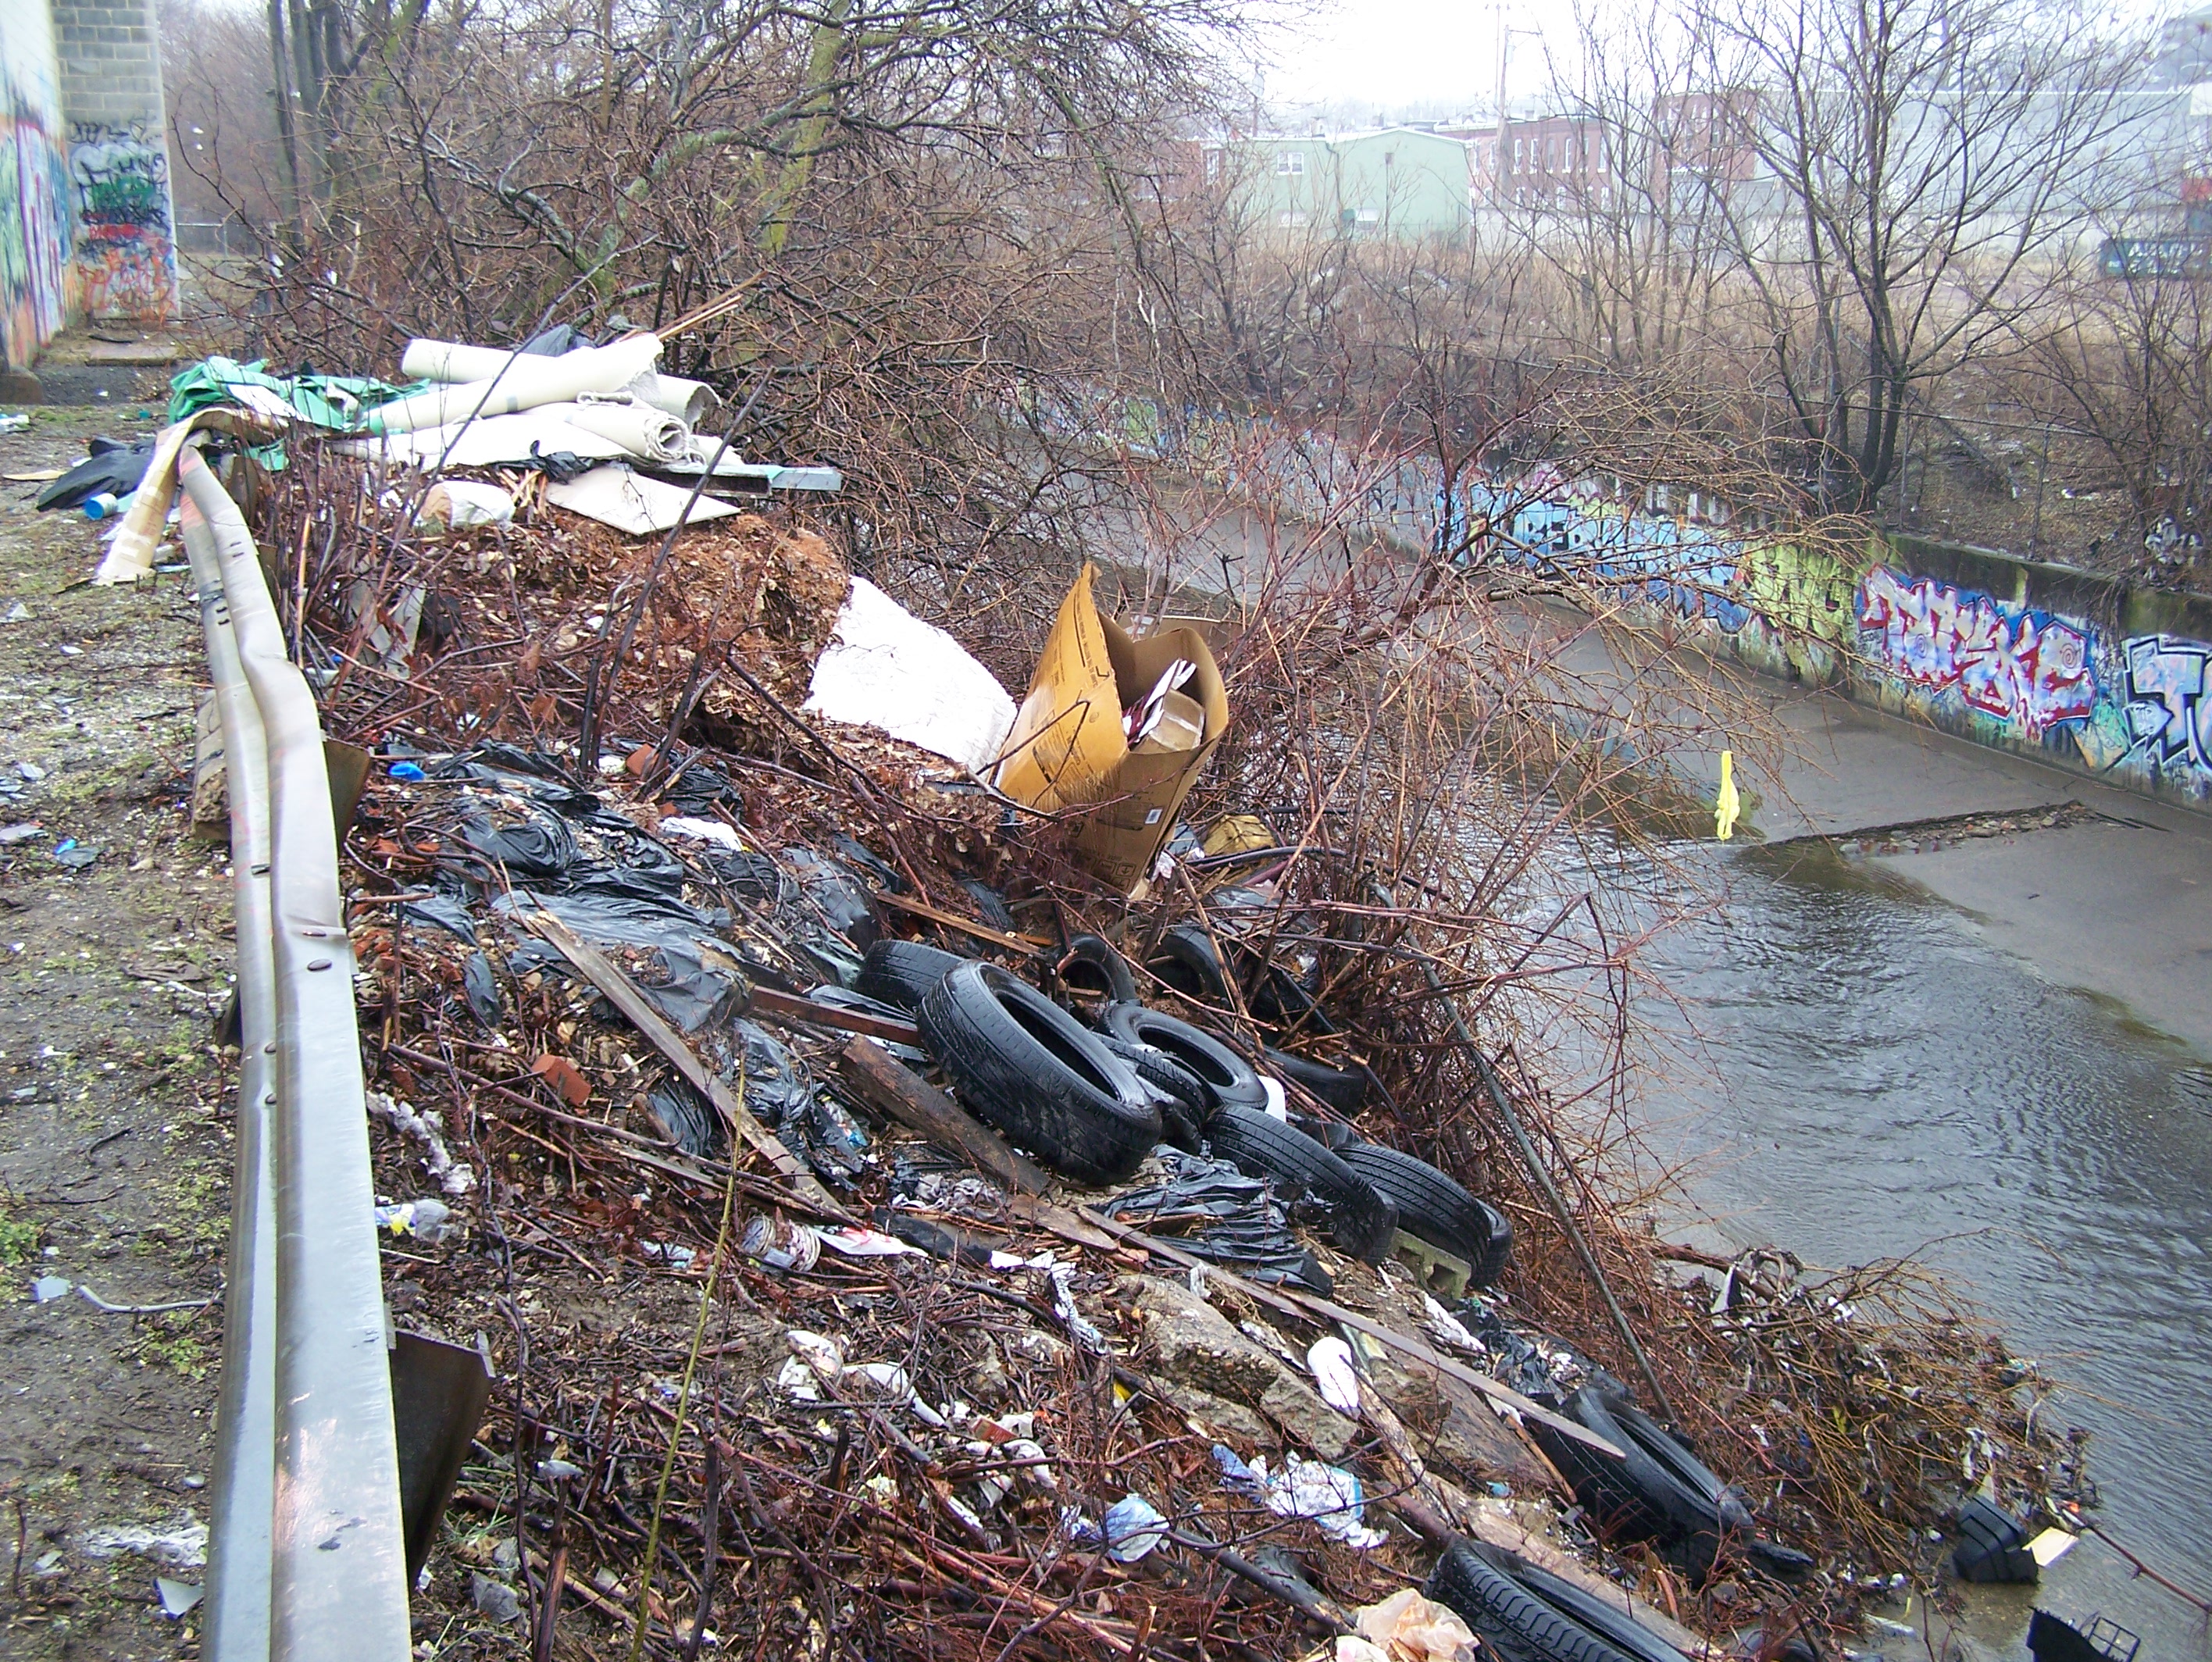 An urban illegal dump site